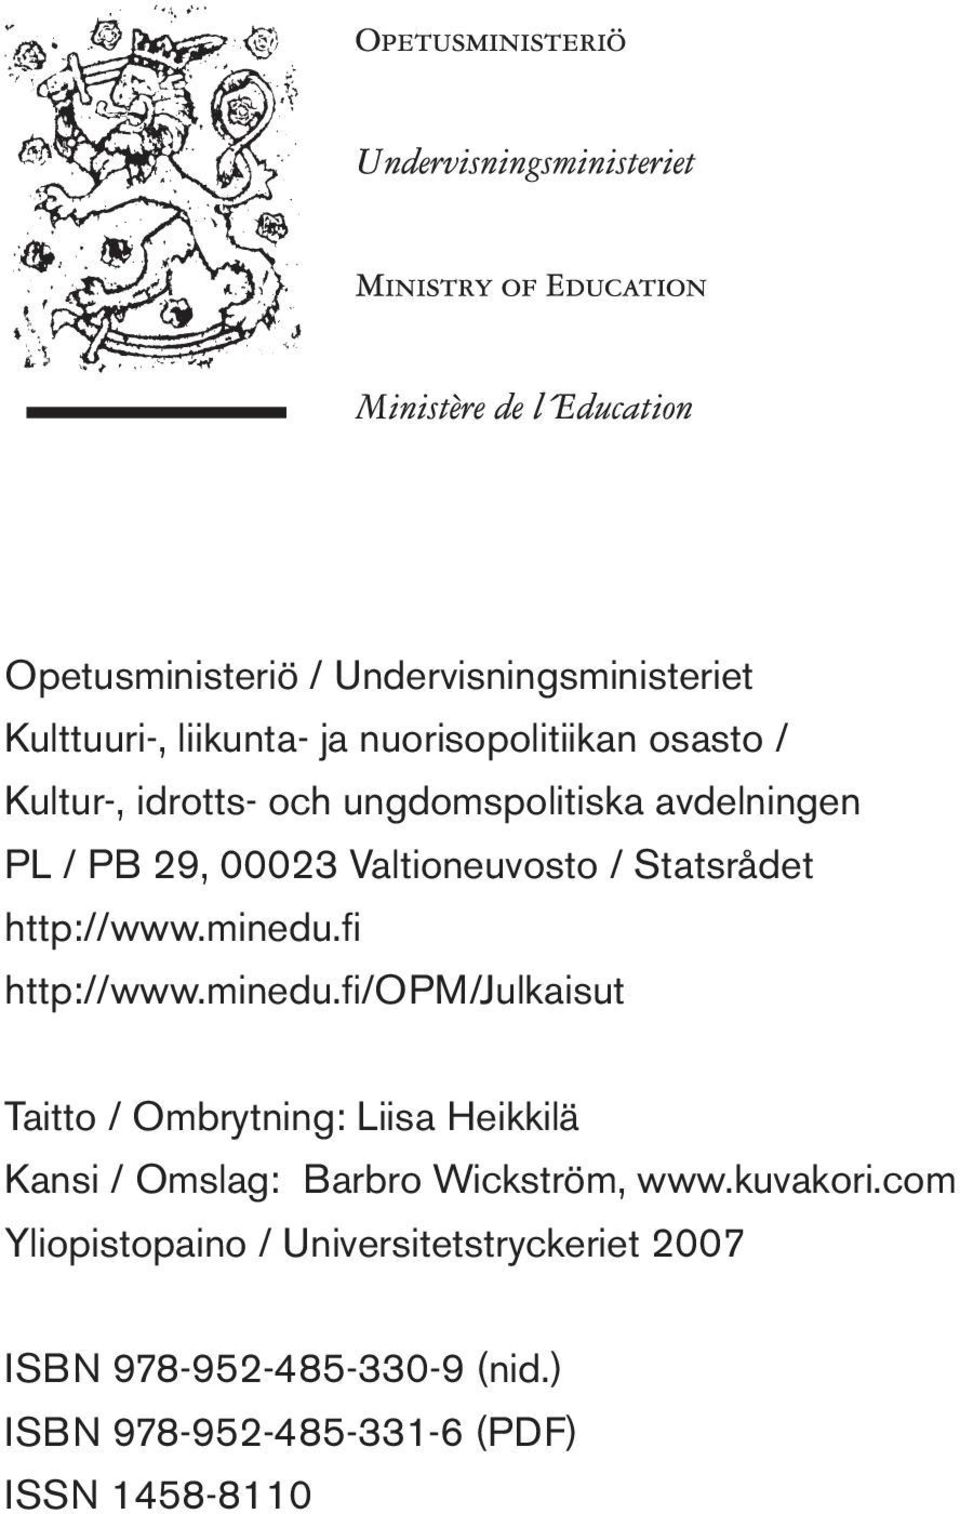 minedu.fi/opm/julkaisut Taitto / Ombrytning: Liisa Heikkilä Kansi / Omslag: Barbro Wickström, www.kuvakori.